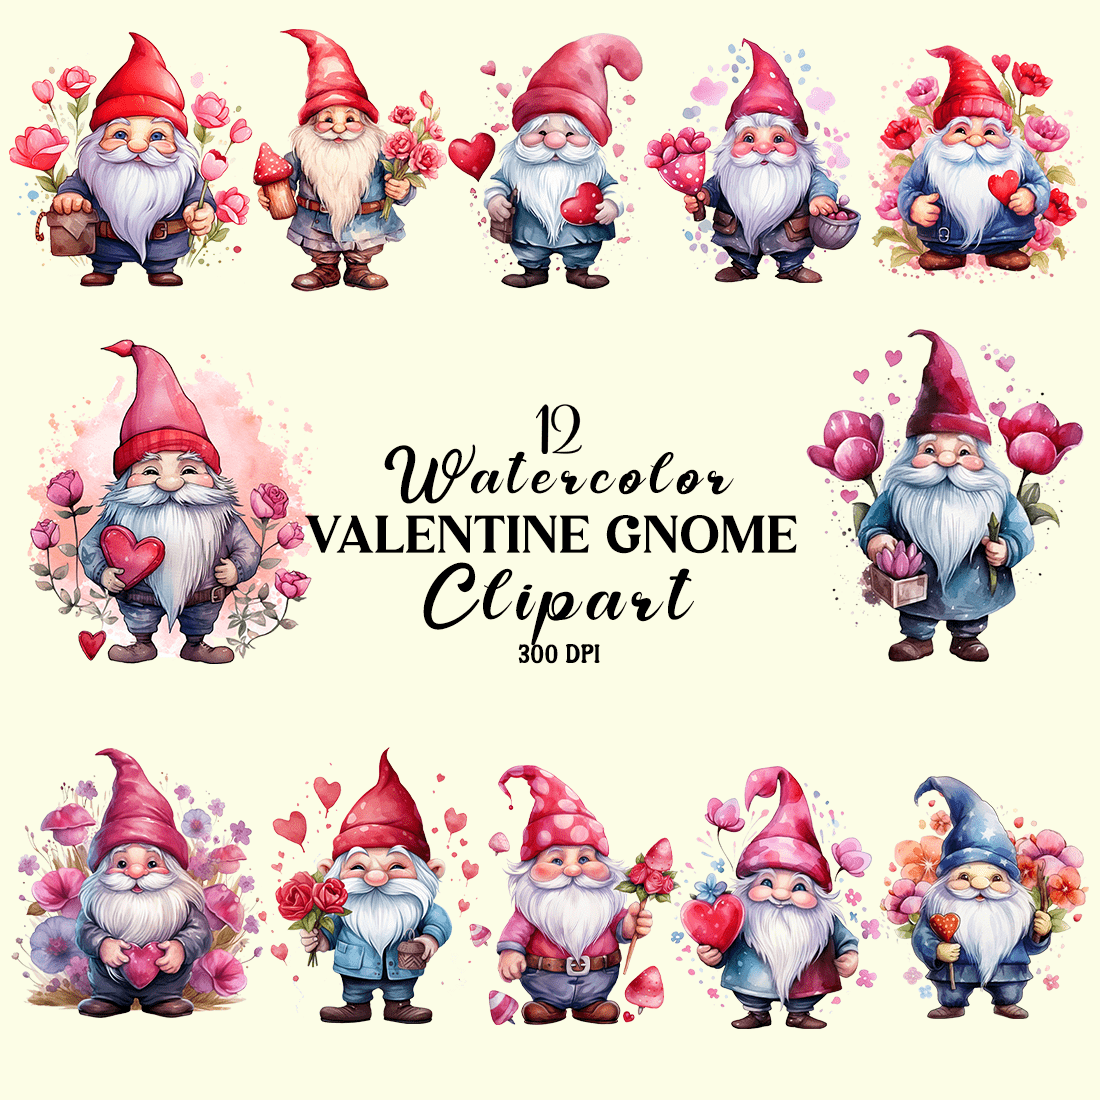 Watercolor Valentine Gnome Clipart cover image.